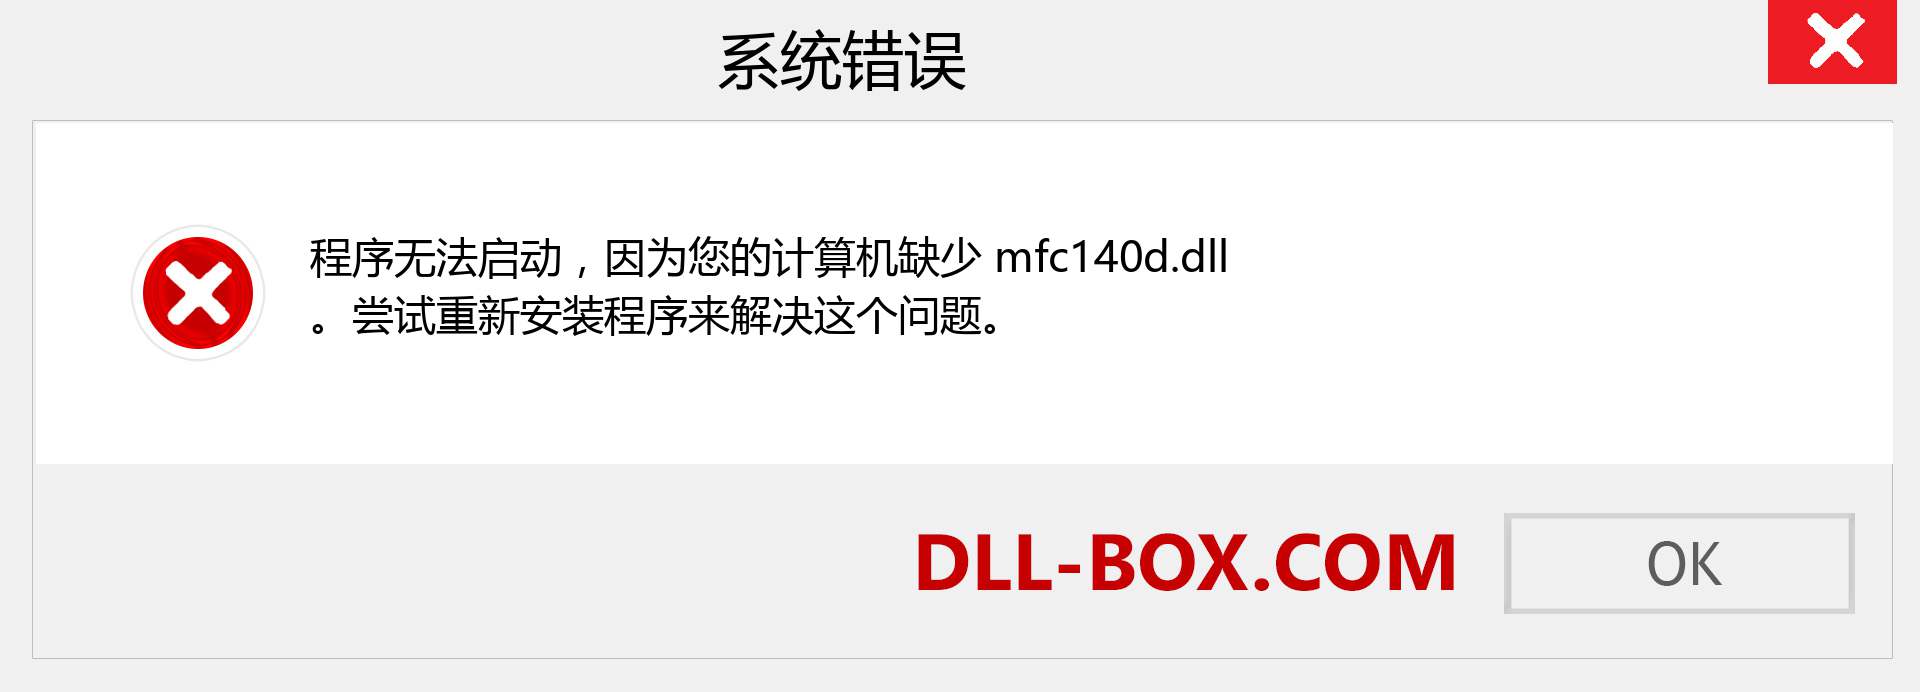 mfc140d.dll 文件丢失？。 适用于 Windows 7、8、10 的下载 - 修复 Windows、照片、图像上的 mfc140d dll 丢失错误